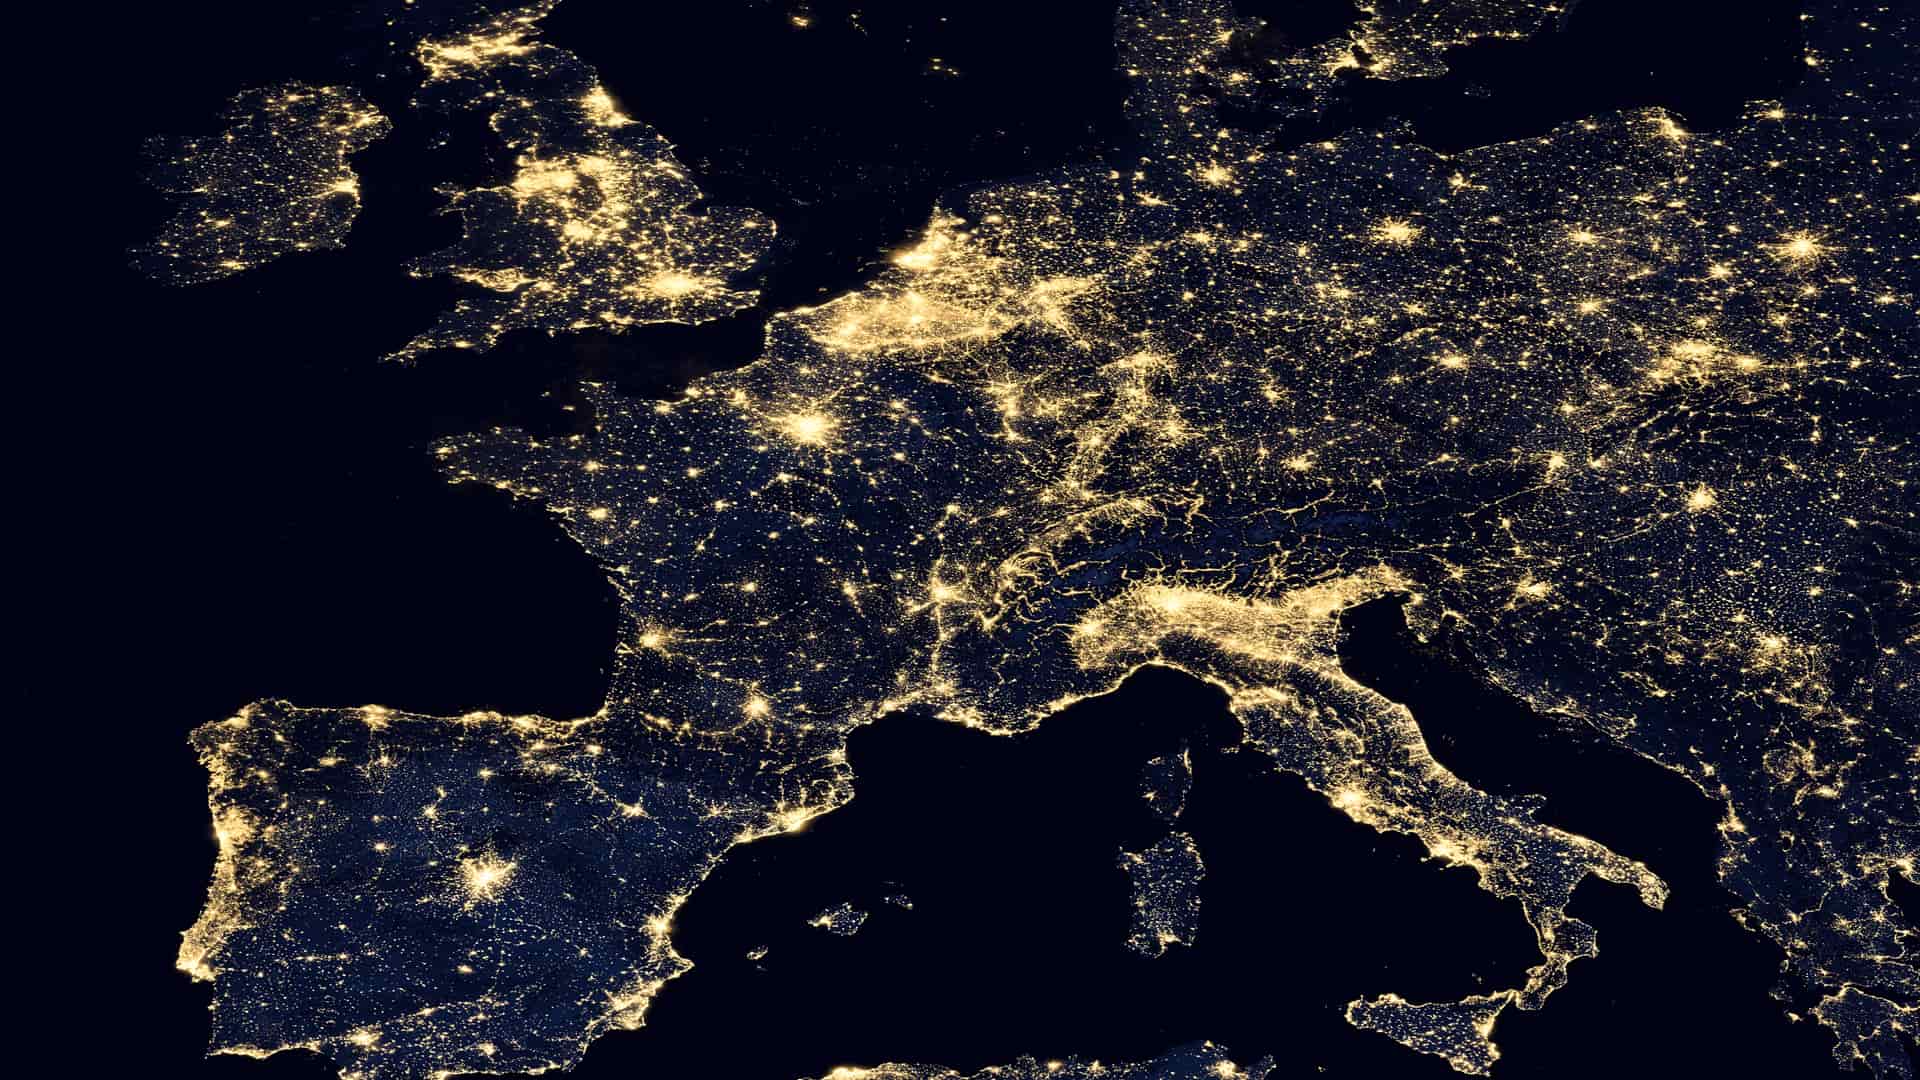 Europa en vista erea nocturna para representar las tarifas internacionales de internet